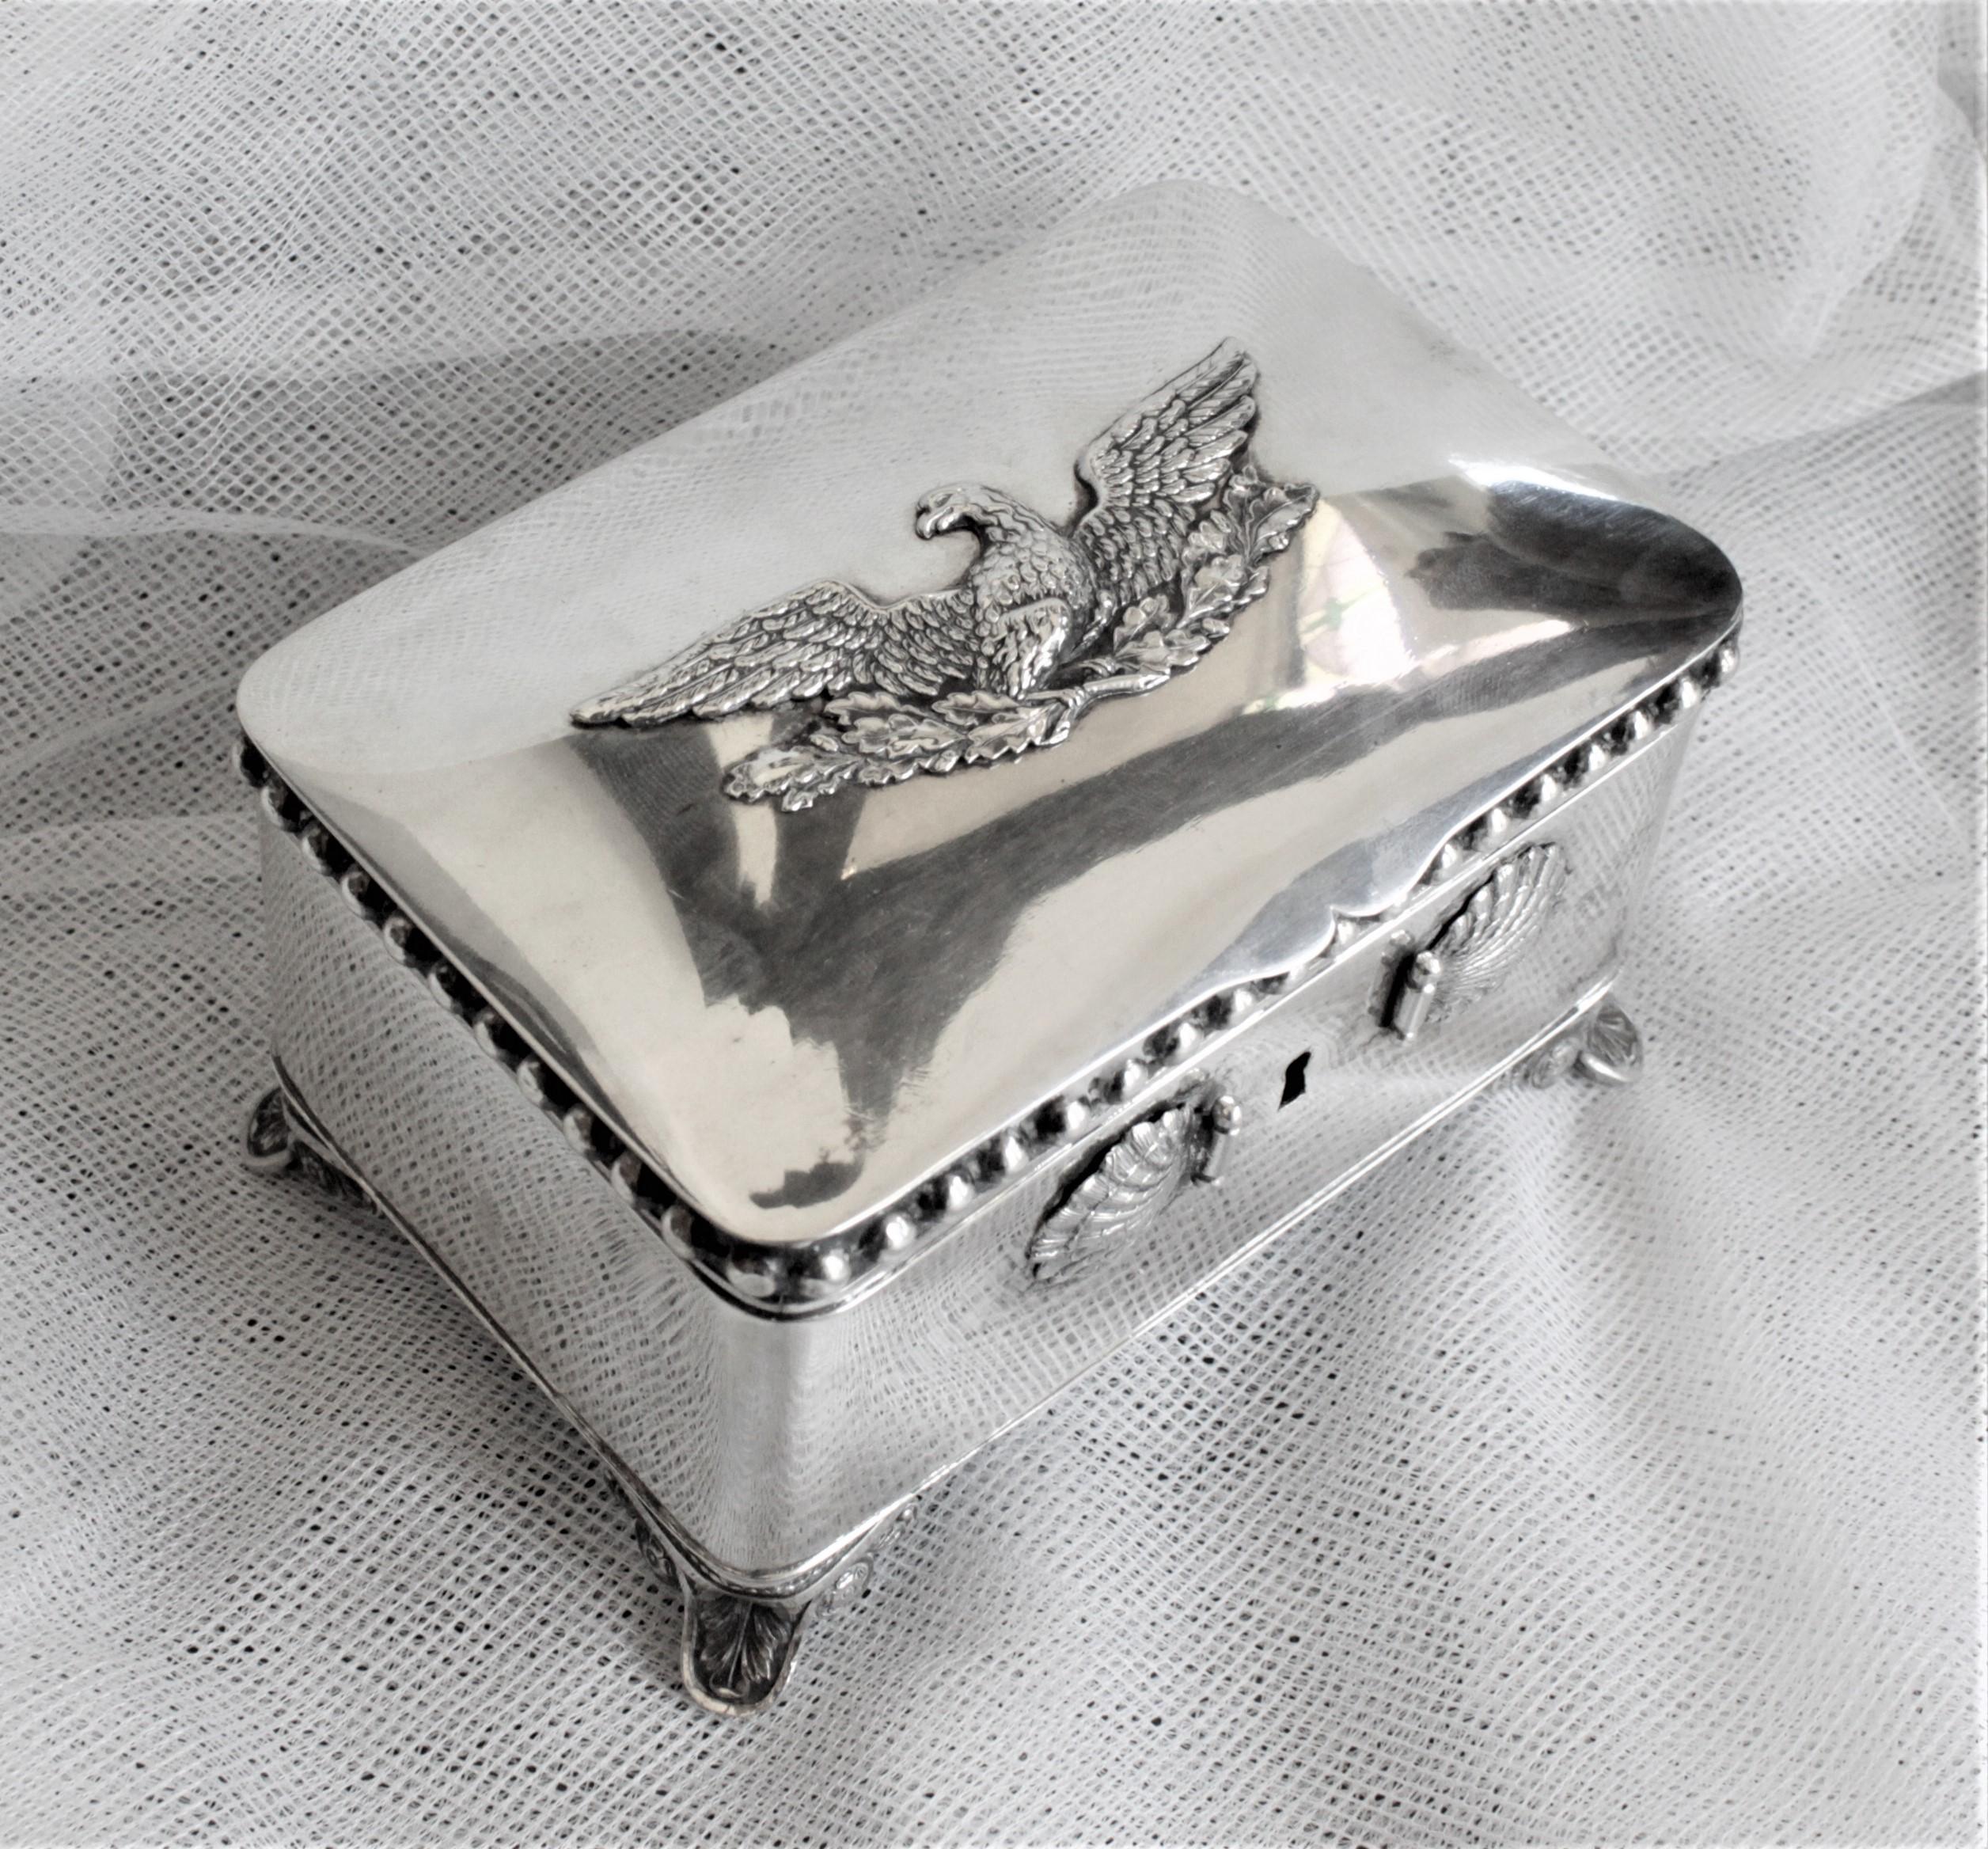 Diese antike deutsche Zuckerdose besteht aus 875er Silber und stammt aus der Zeit um 1850 im Biedermeier-Stil. Das Kästchen steht auf kunstvoll gearbeiteten Füßen und weist ein Muschelrelief auf, das die Vorderseite des Kästchens ziert, und obenauf